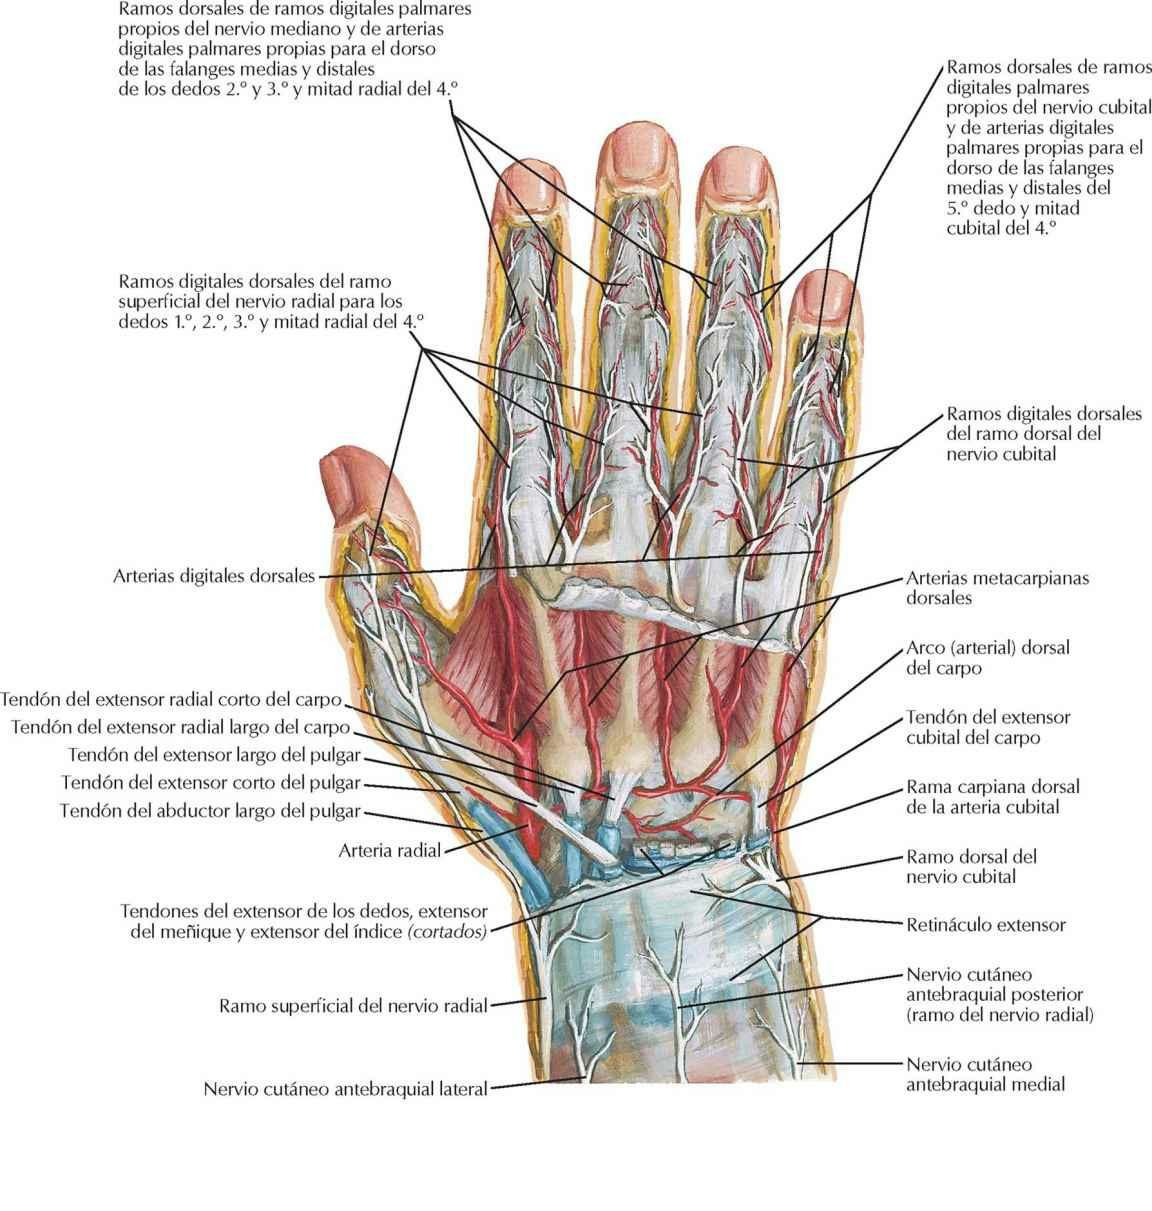 Nervios y arterias del dorso de la mano y carpo